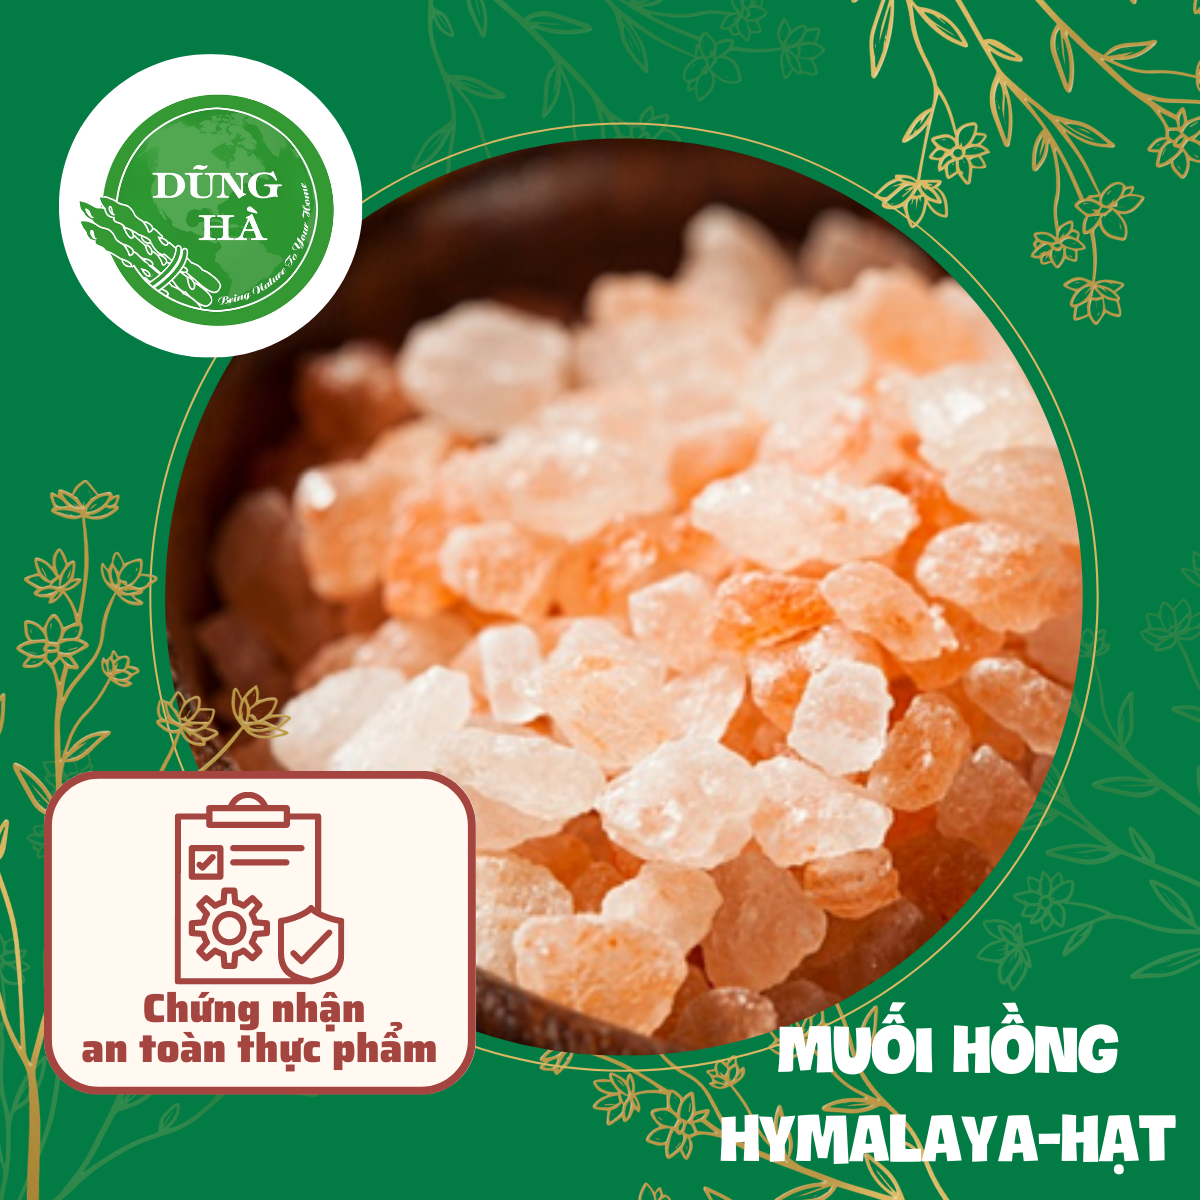 Muối hồng Hymalaya-hạt chất lượng hảo hạng